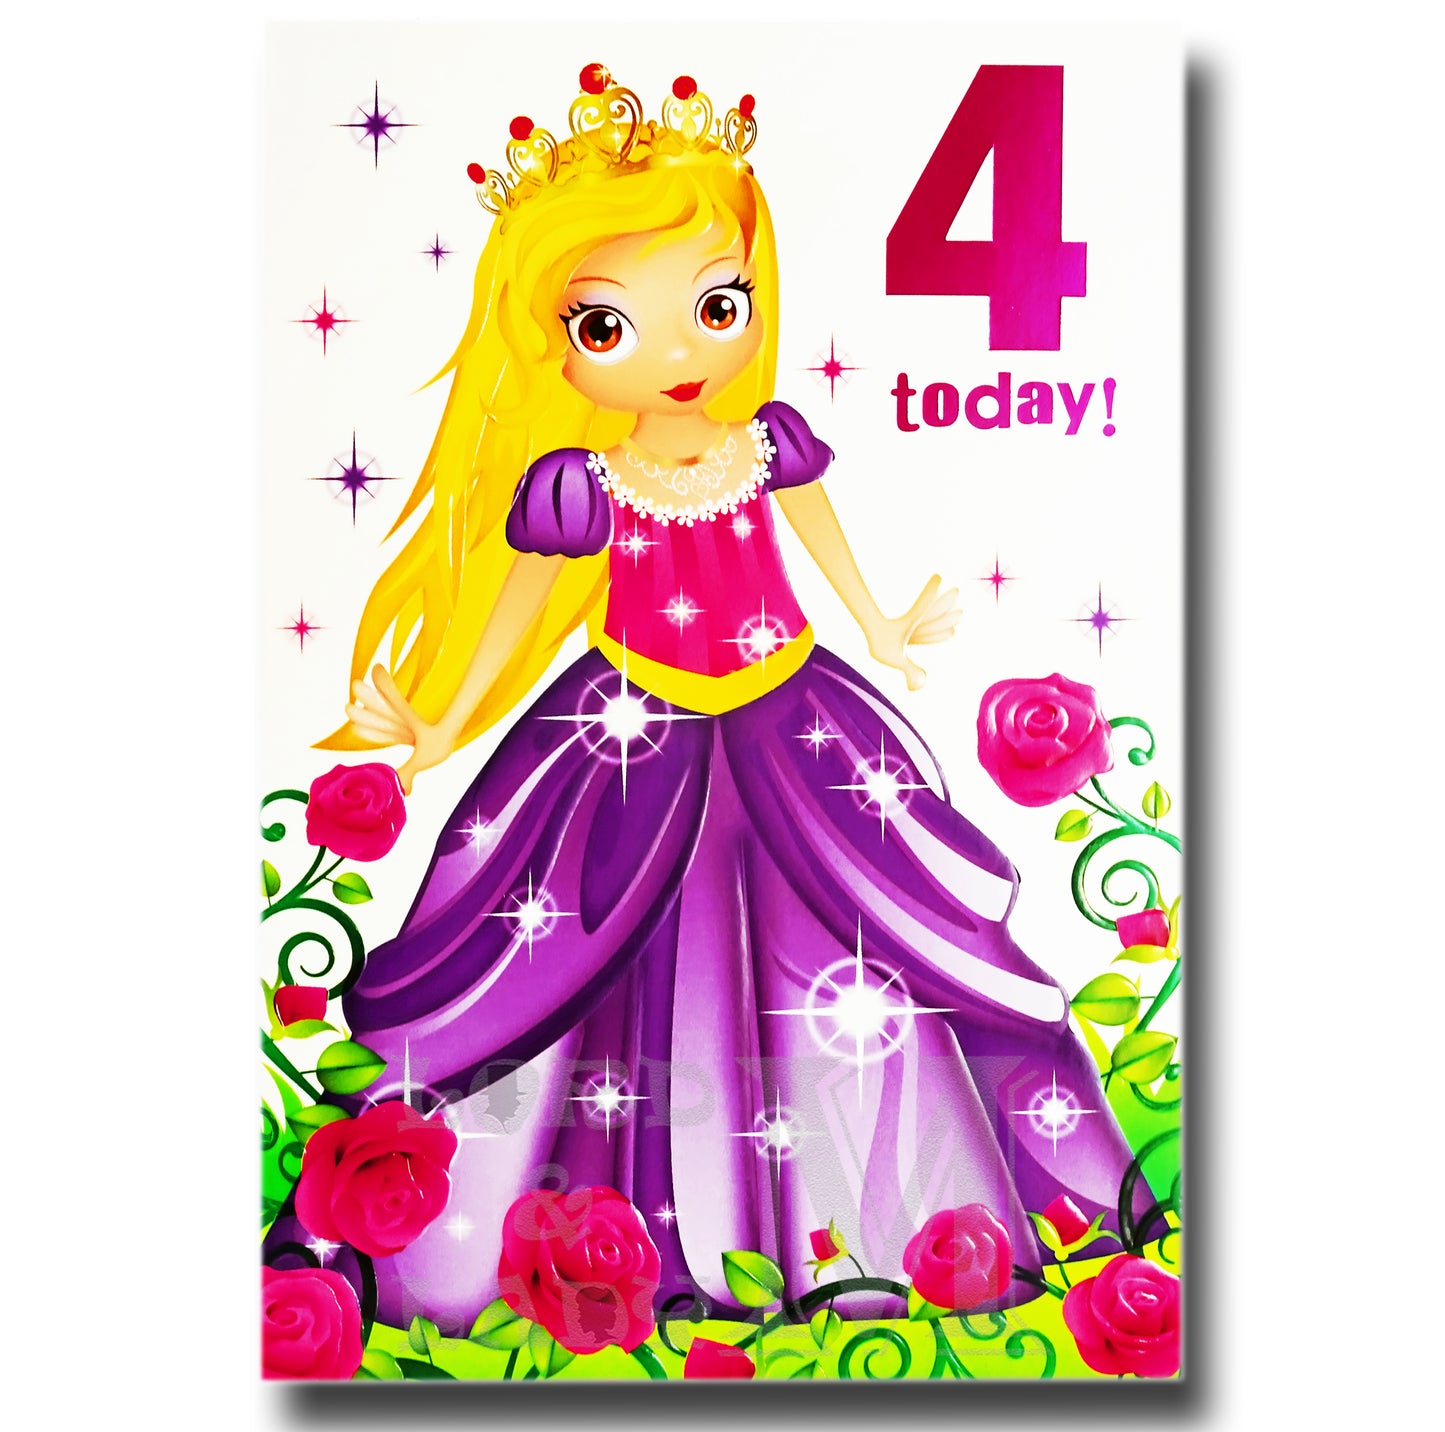 20cm - 4 Today! - Princess Roses - E